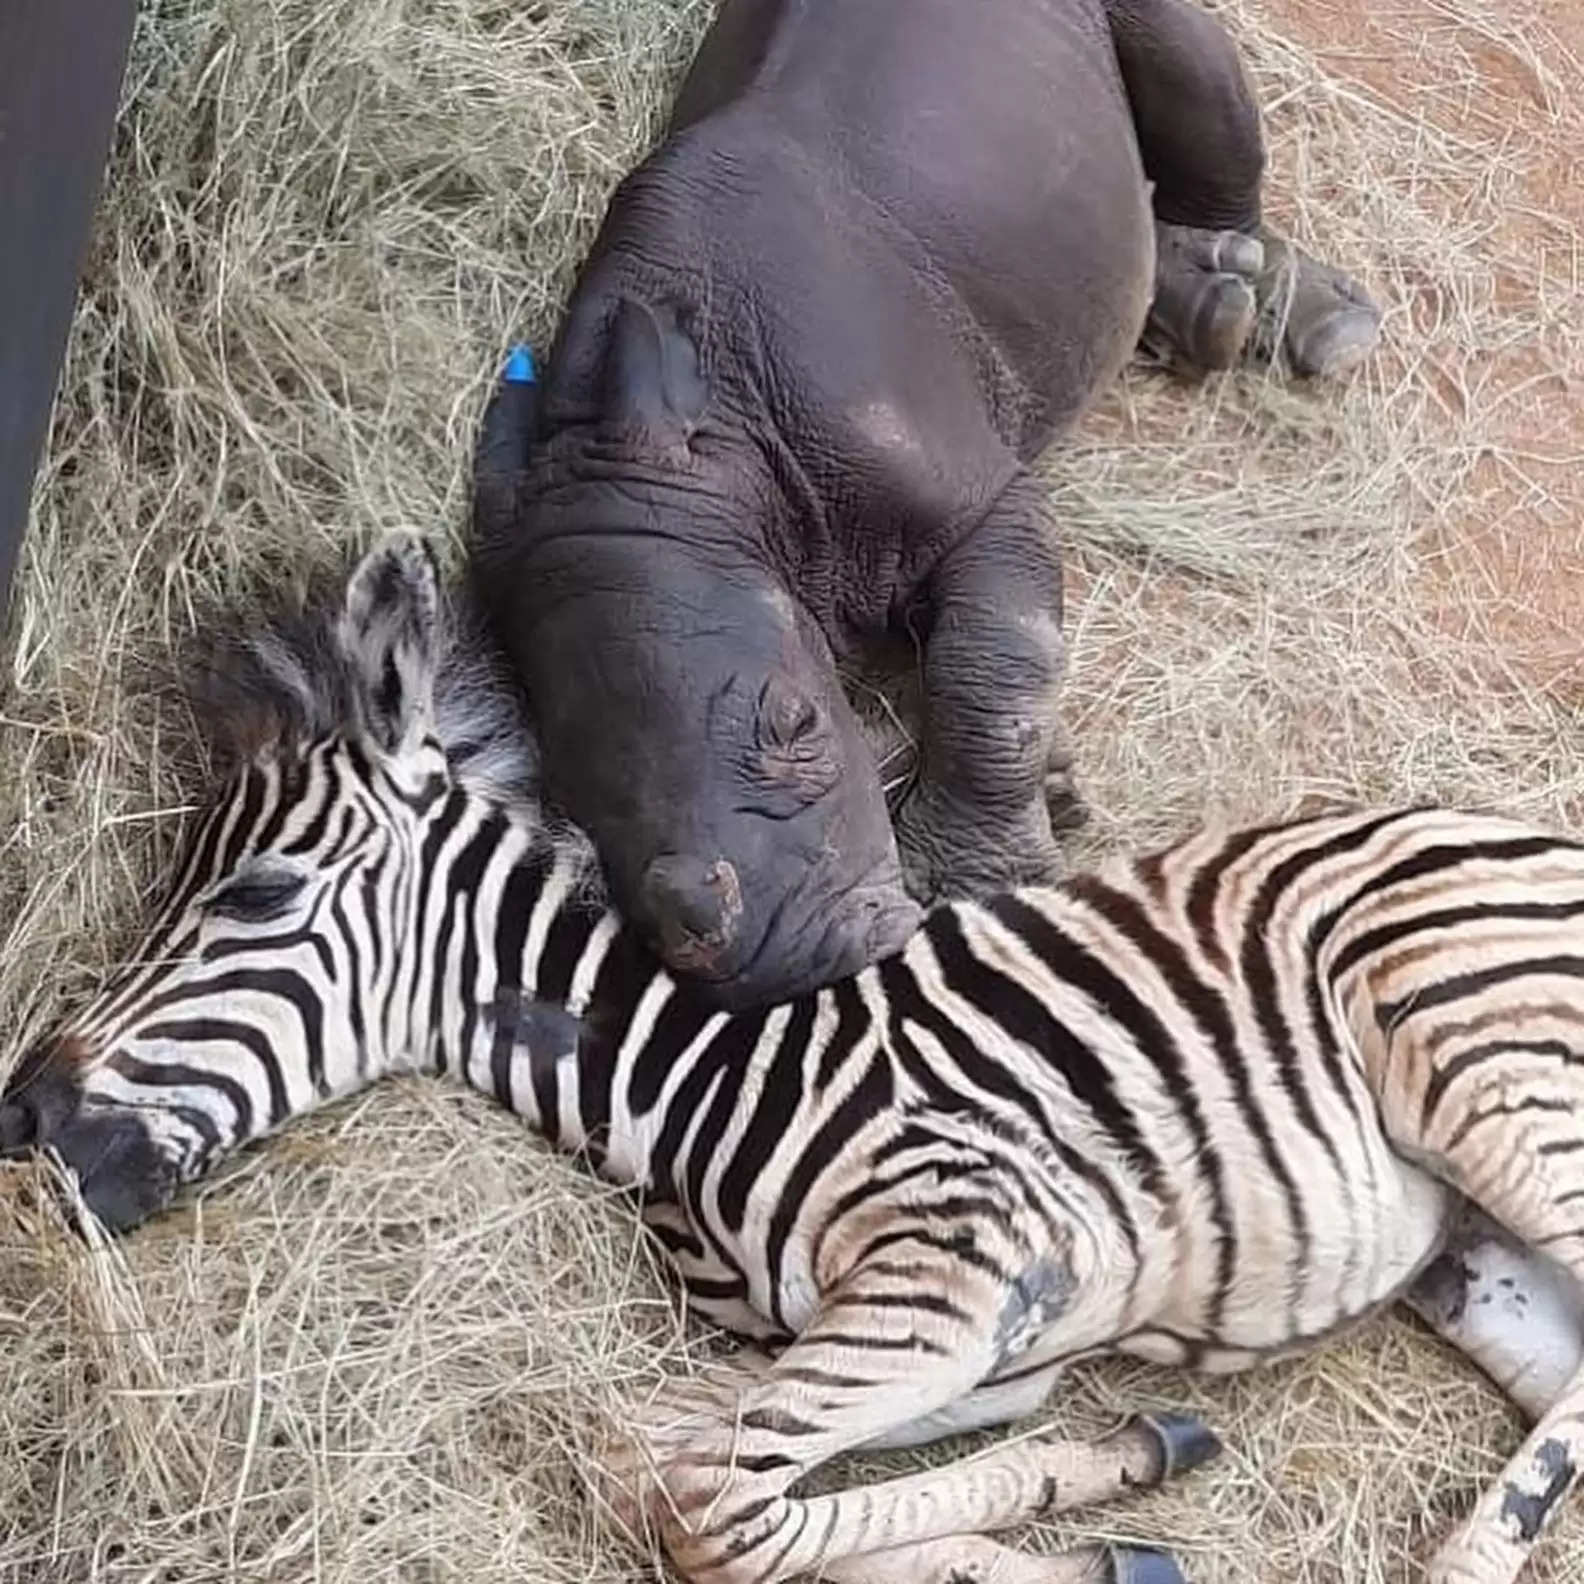 友誼超越物種！小斑馬和孤兒犀牛「彼此相知相惜」　沒家人互相依靠：我們是朋友